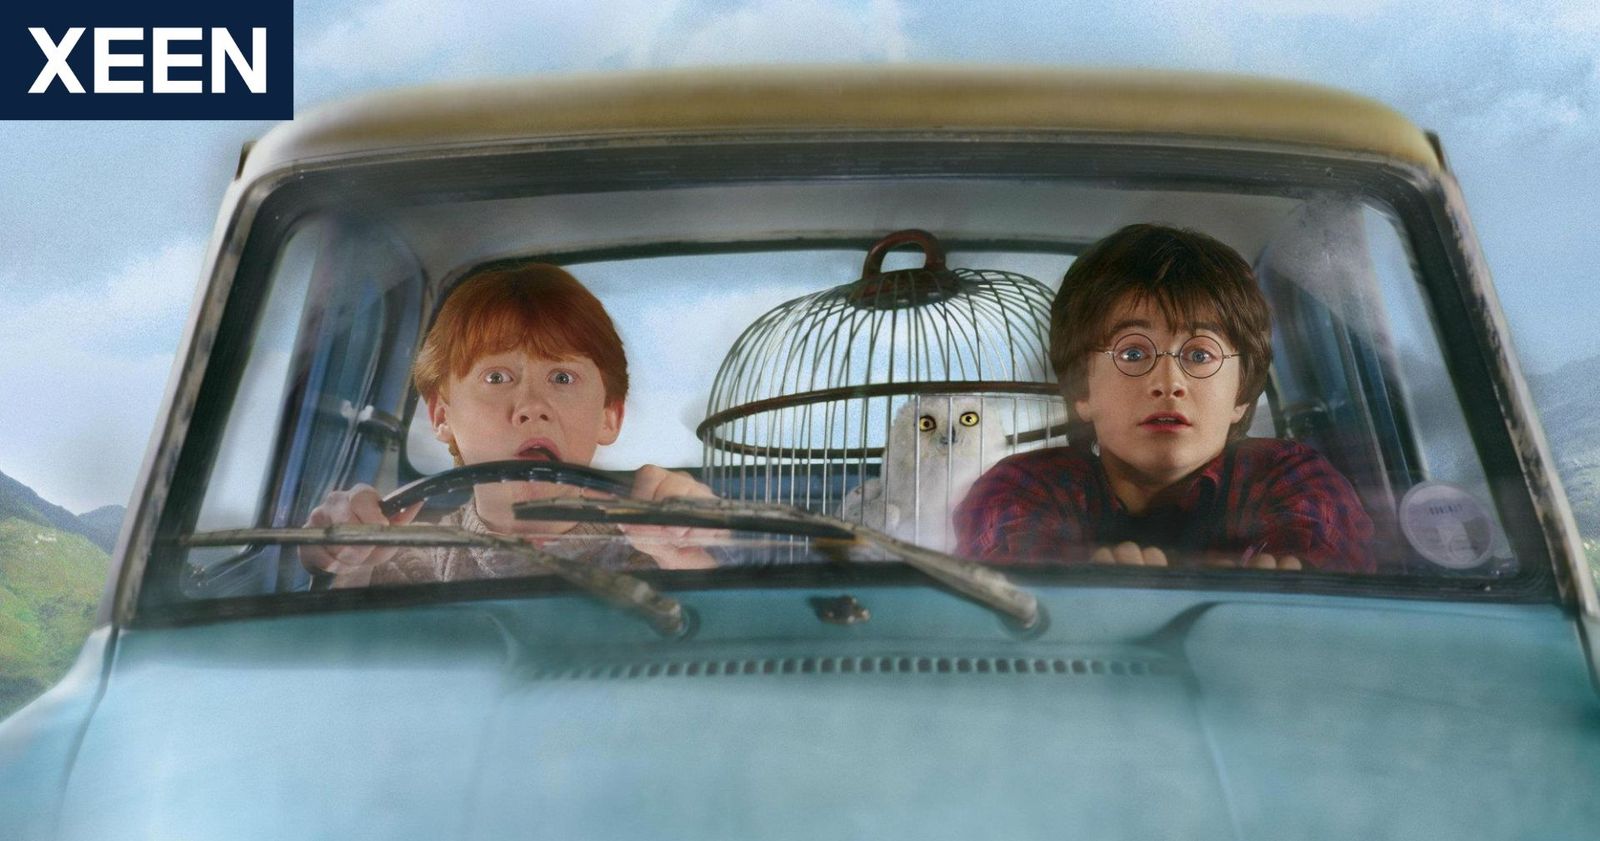 ดู Harry Potter (แฮร์รี่ พอตเตอร์) แบบเรียงภาค ดูที่ไหน พร้อมรีวิว